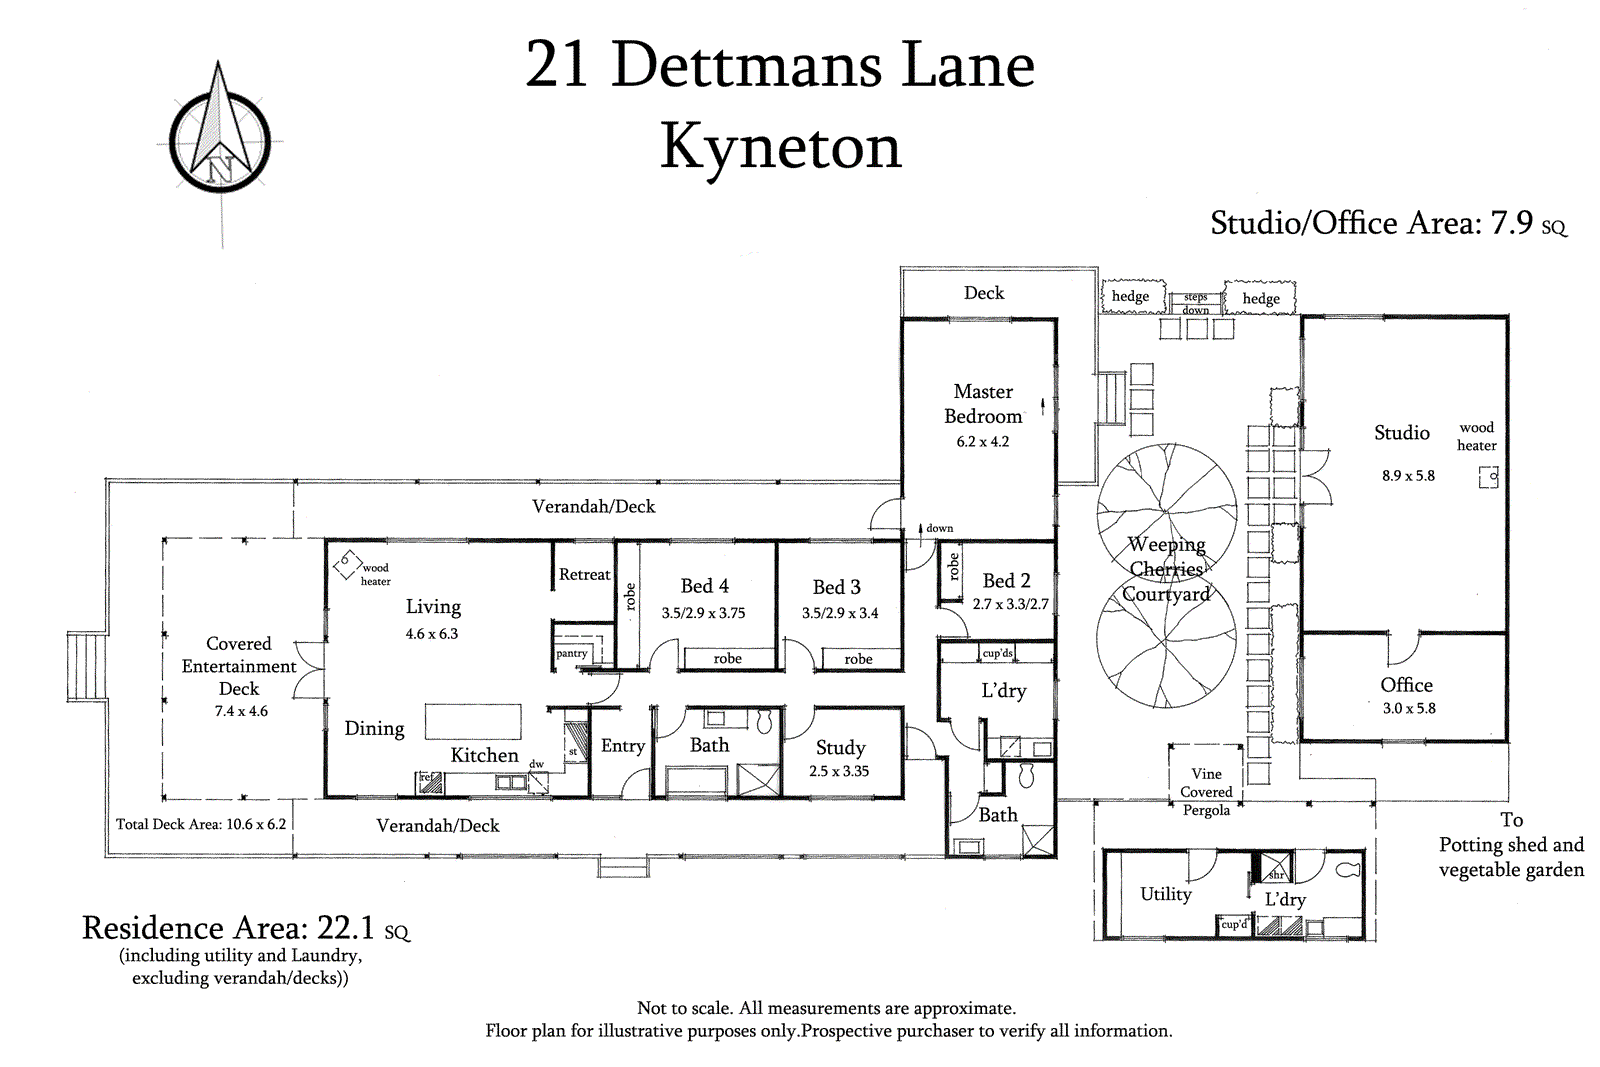 21 Dettmans Lane, Kyneton - RT Edgar